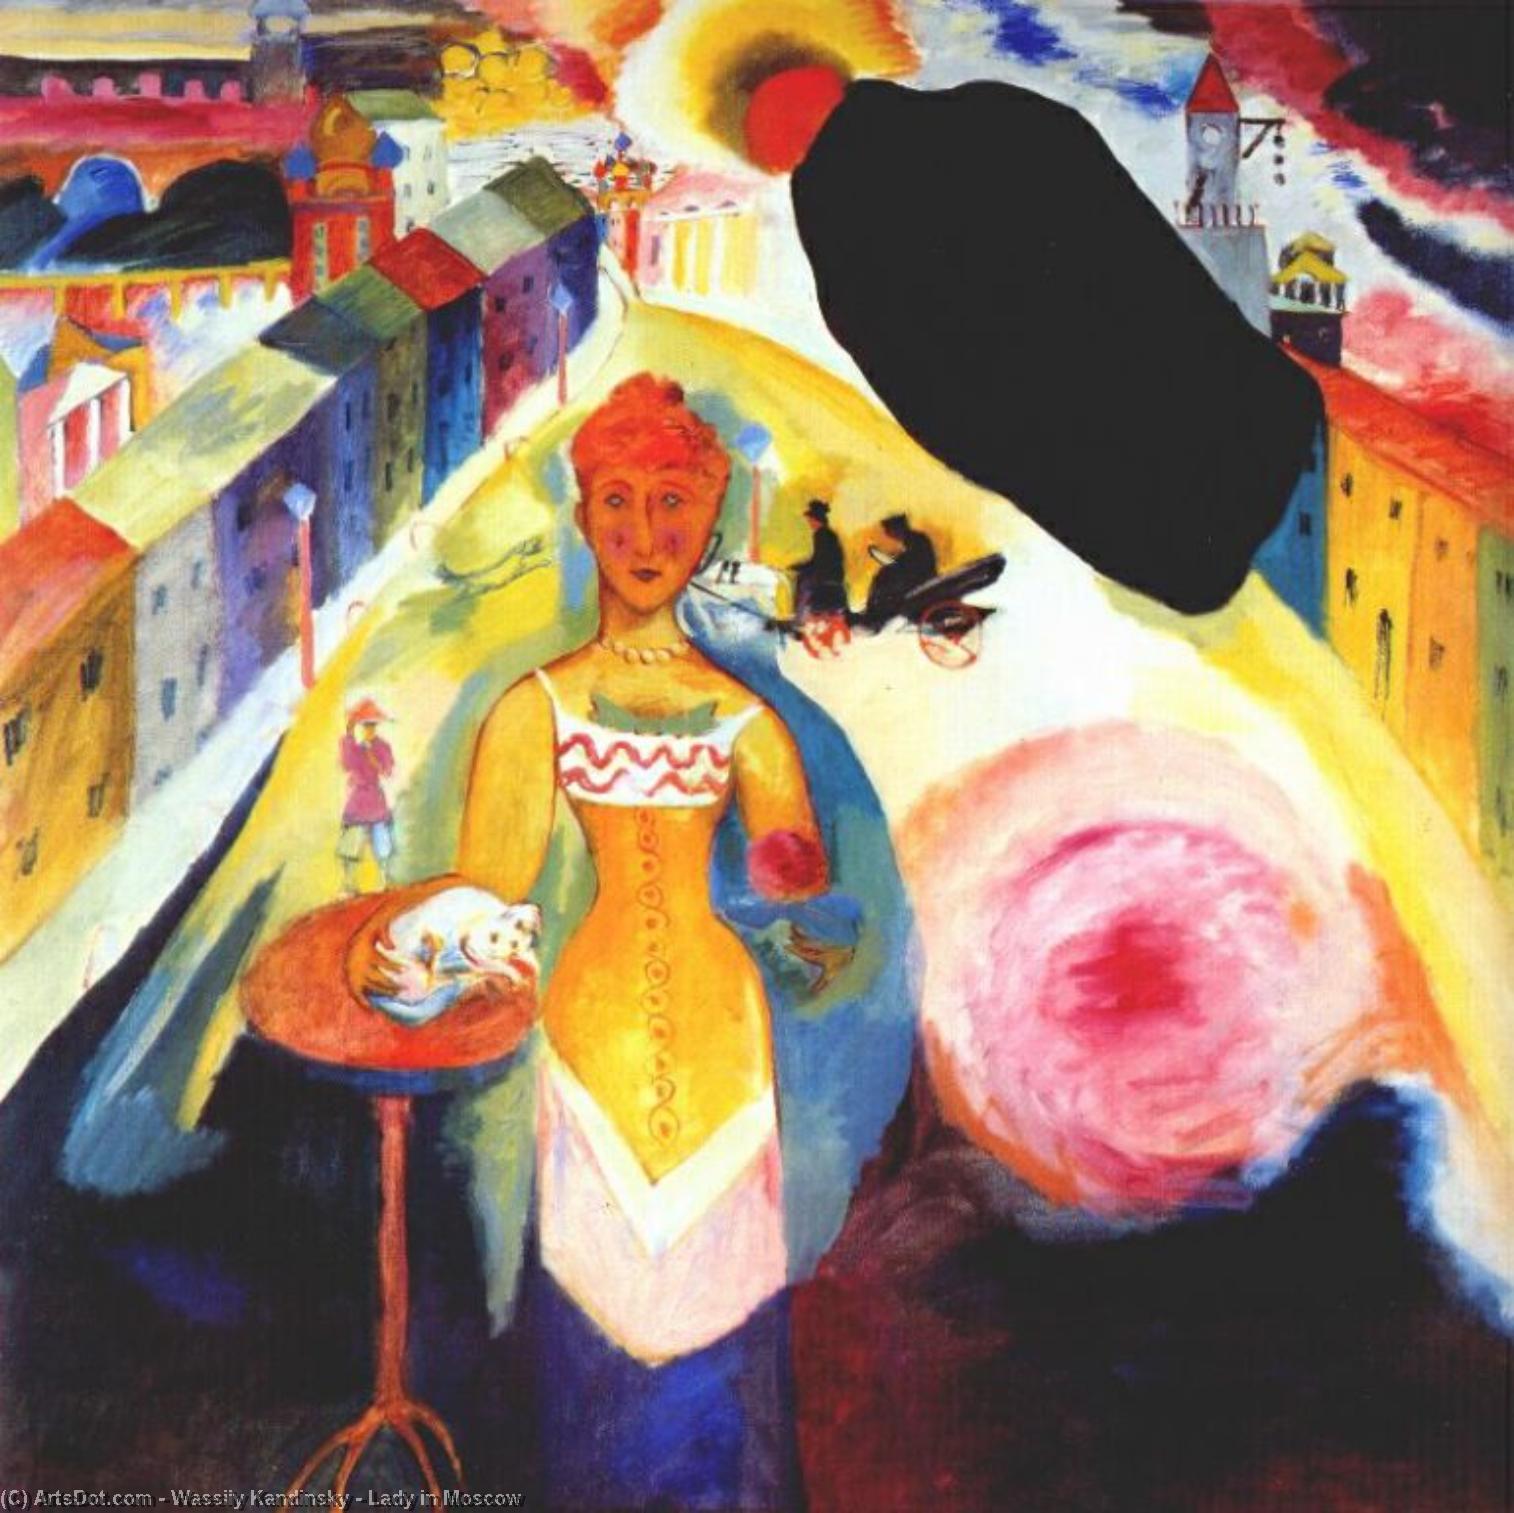 WikiOO.org - Εγκυκλοπαίδεια Καλών Τεχνών - Ζωγραφική, έργα τέχνης Wassily Kandinsky - Lady in Moscow